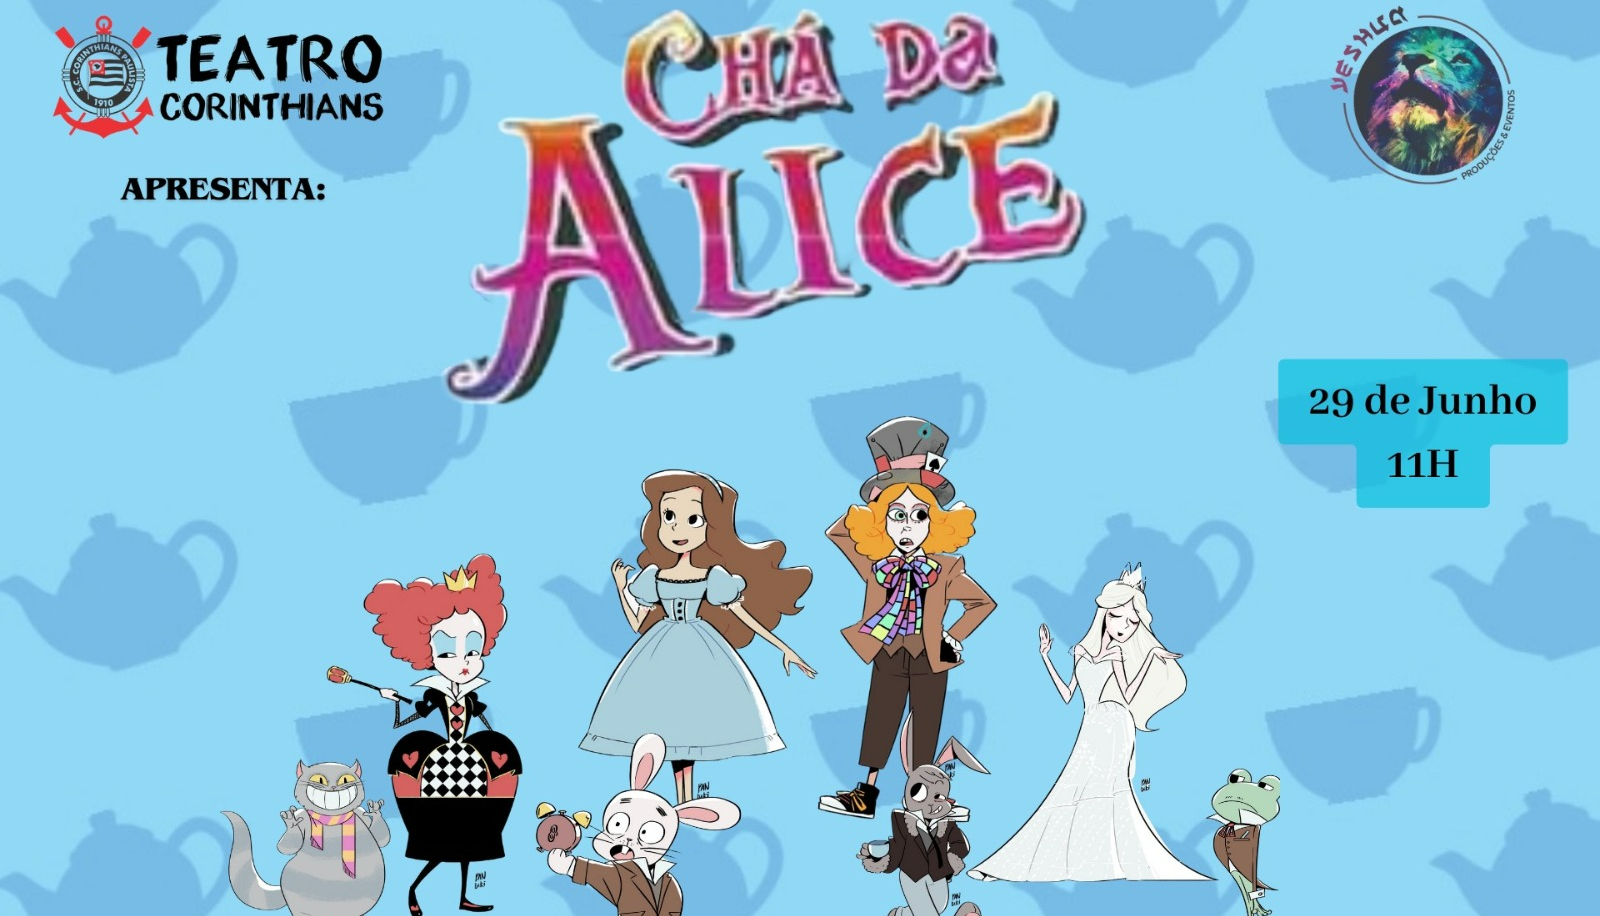 Chá da Alice no Teatro Corinthians